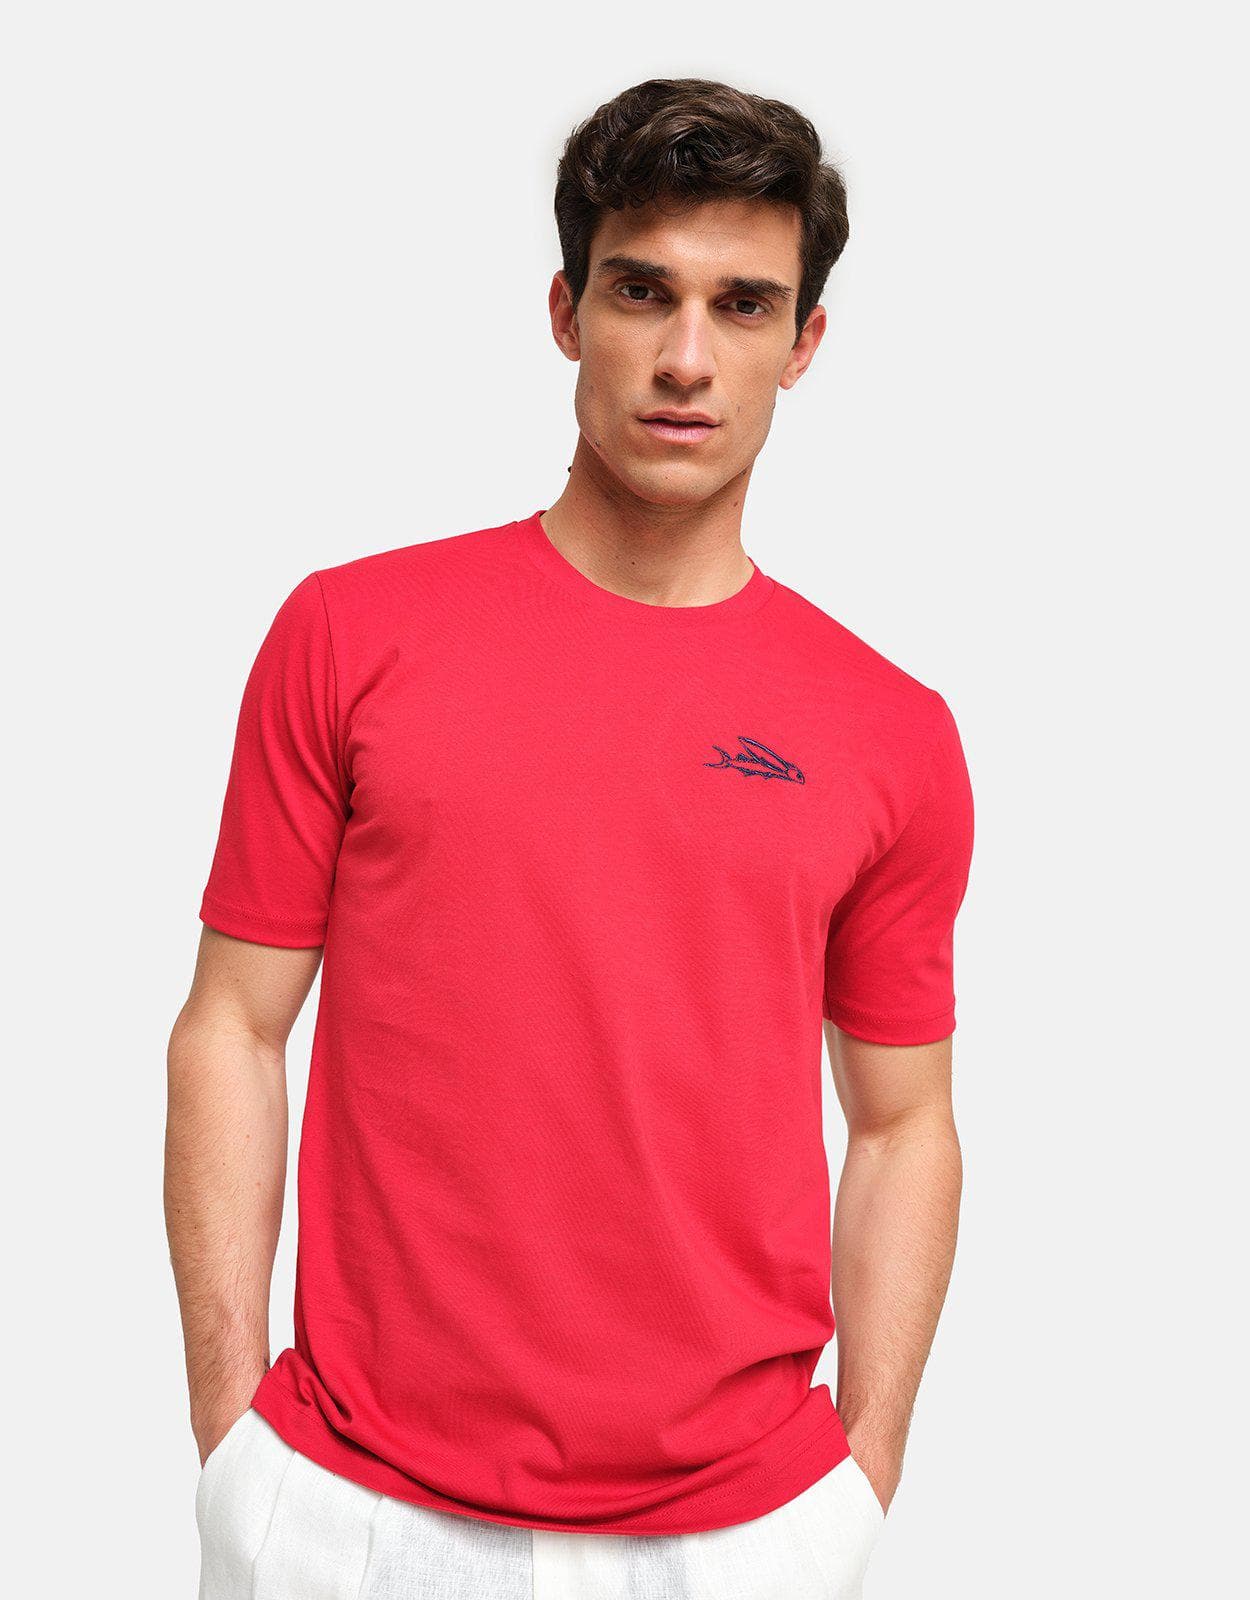 Peninsula Swimwear T-Shirt Red Island Cotton